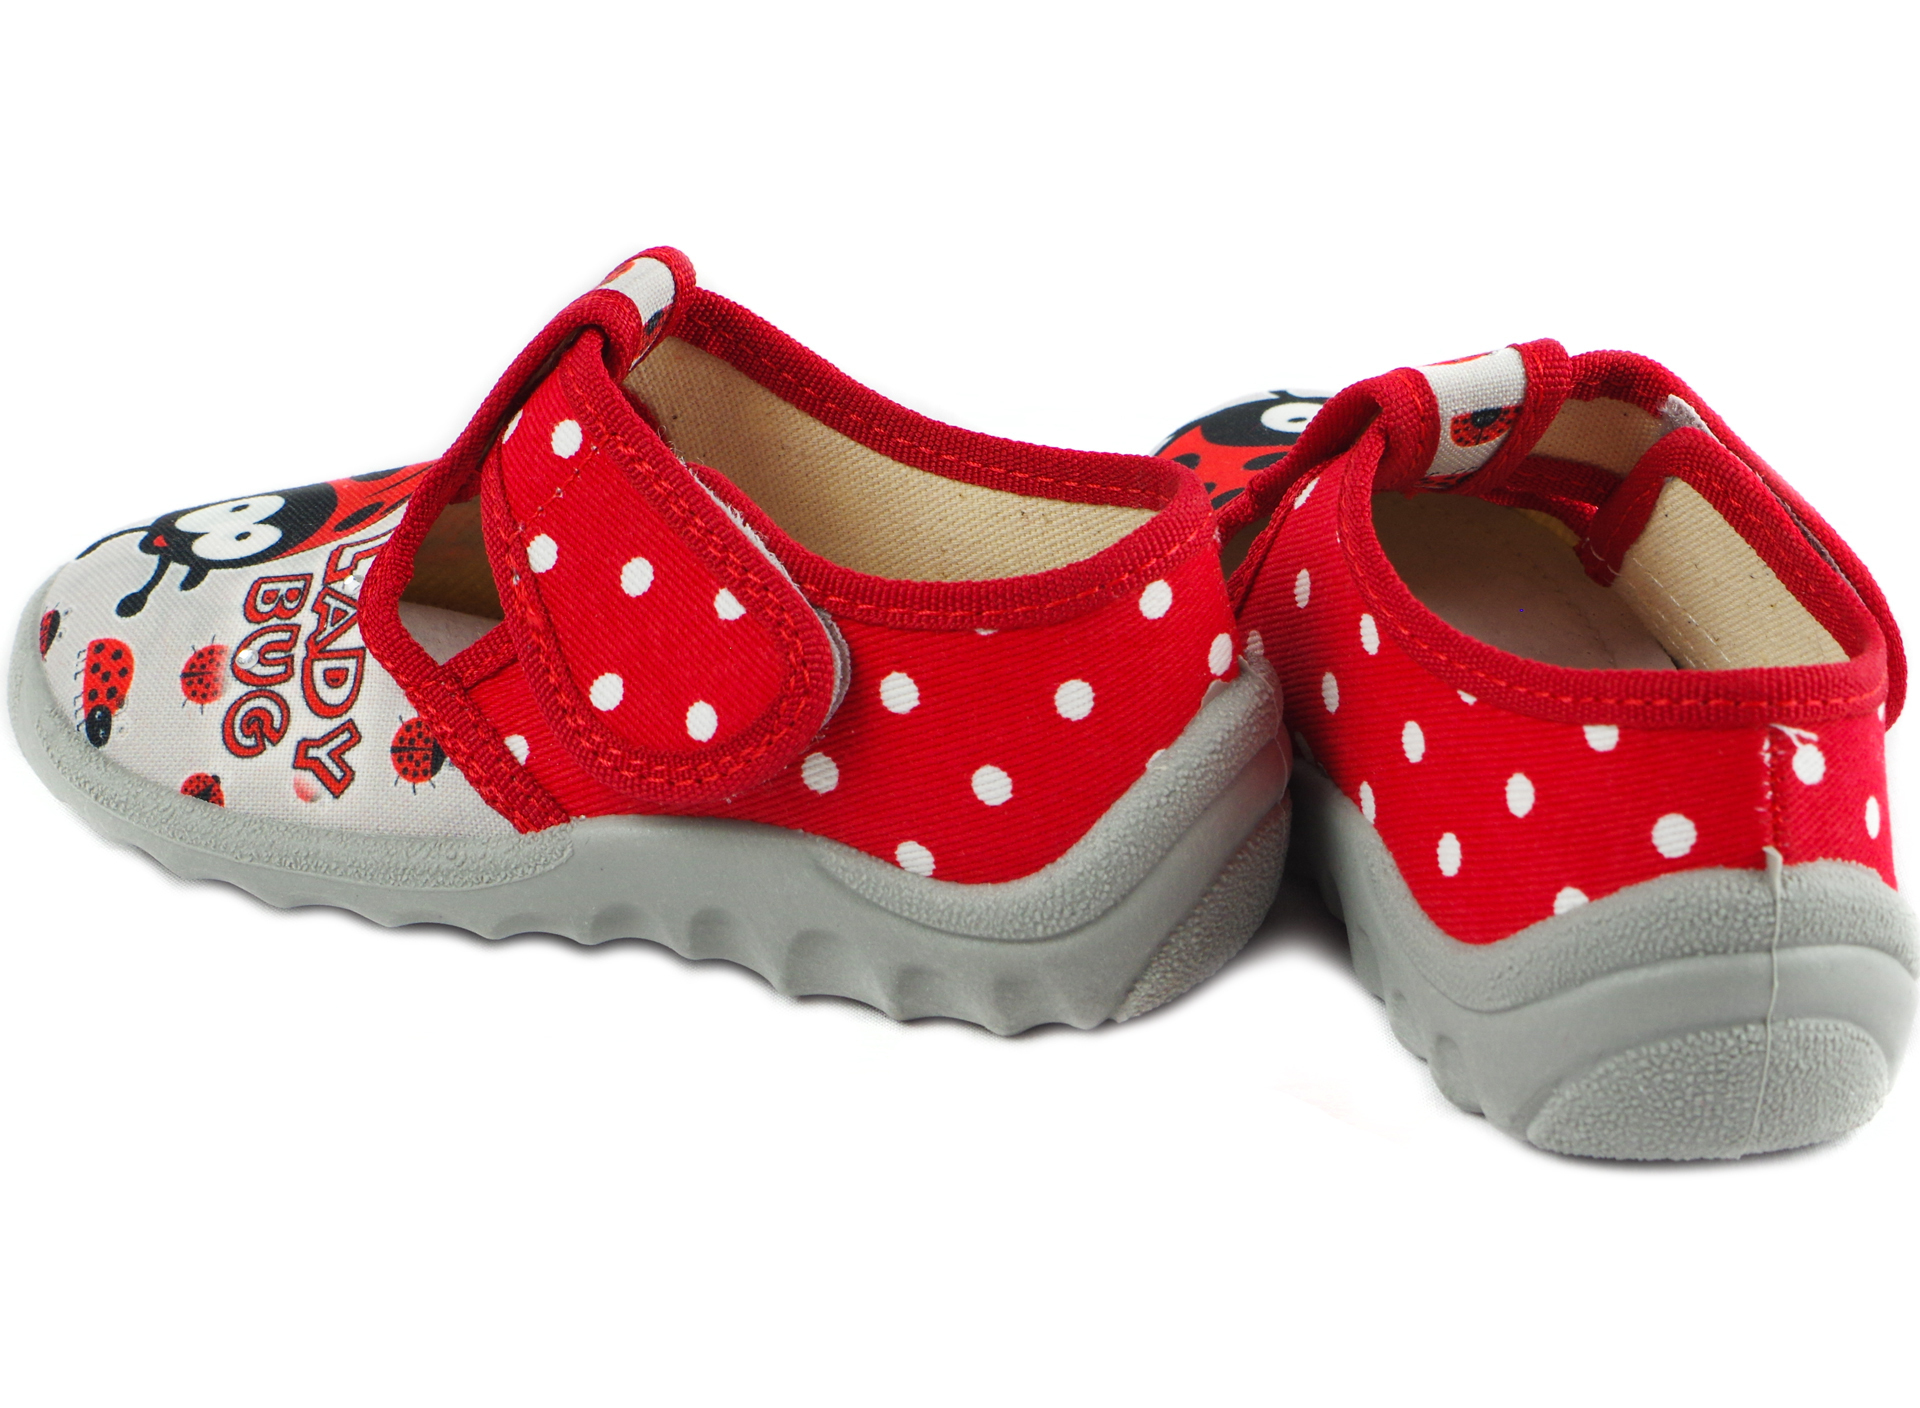 Текстильная обувь для девочек Тапочки Даша Lady Bug (1914) цвет Красный 21-27 размеры – Sole Kids. Фото 4